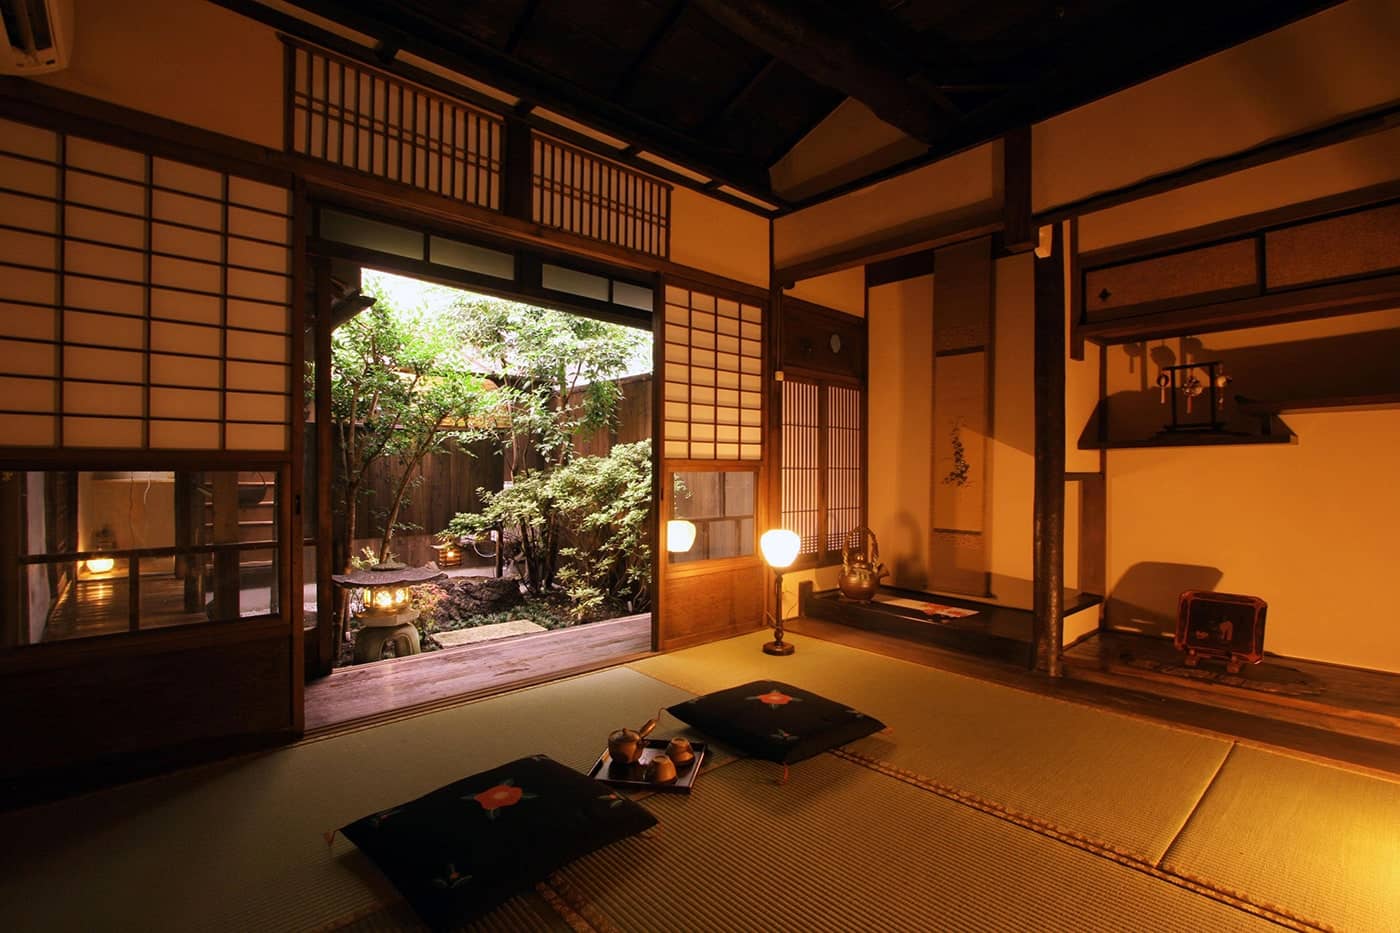 1日1組限定。京都ならではの雰囲気を体験できる町屋貸切の宿